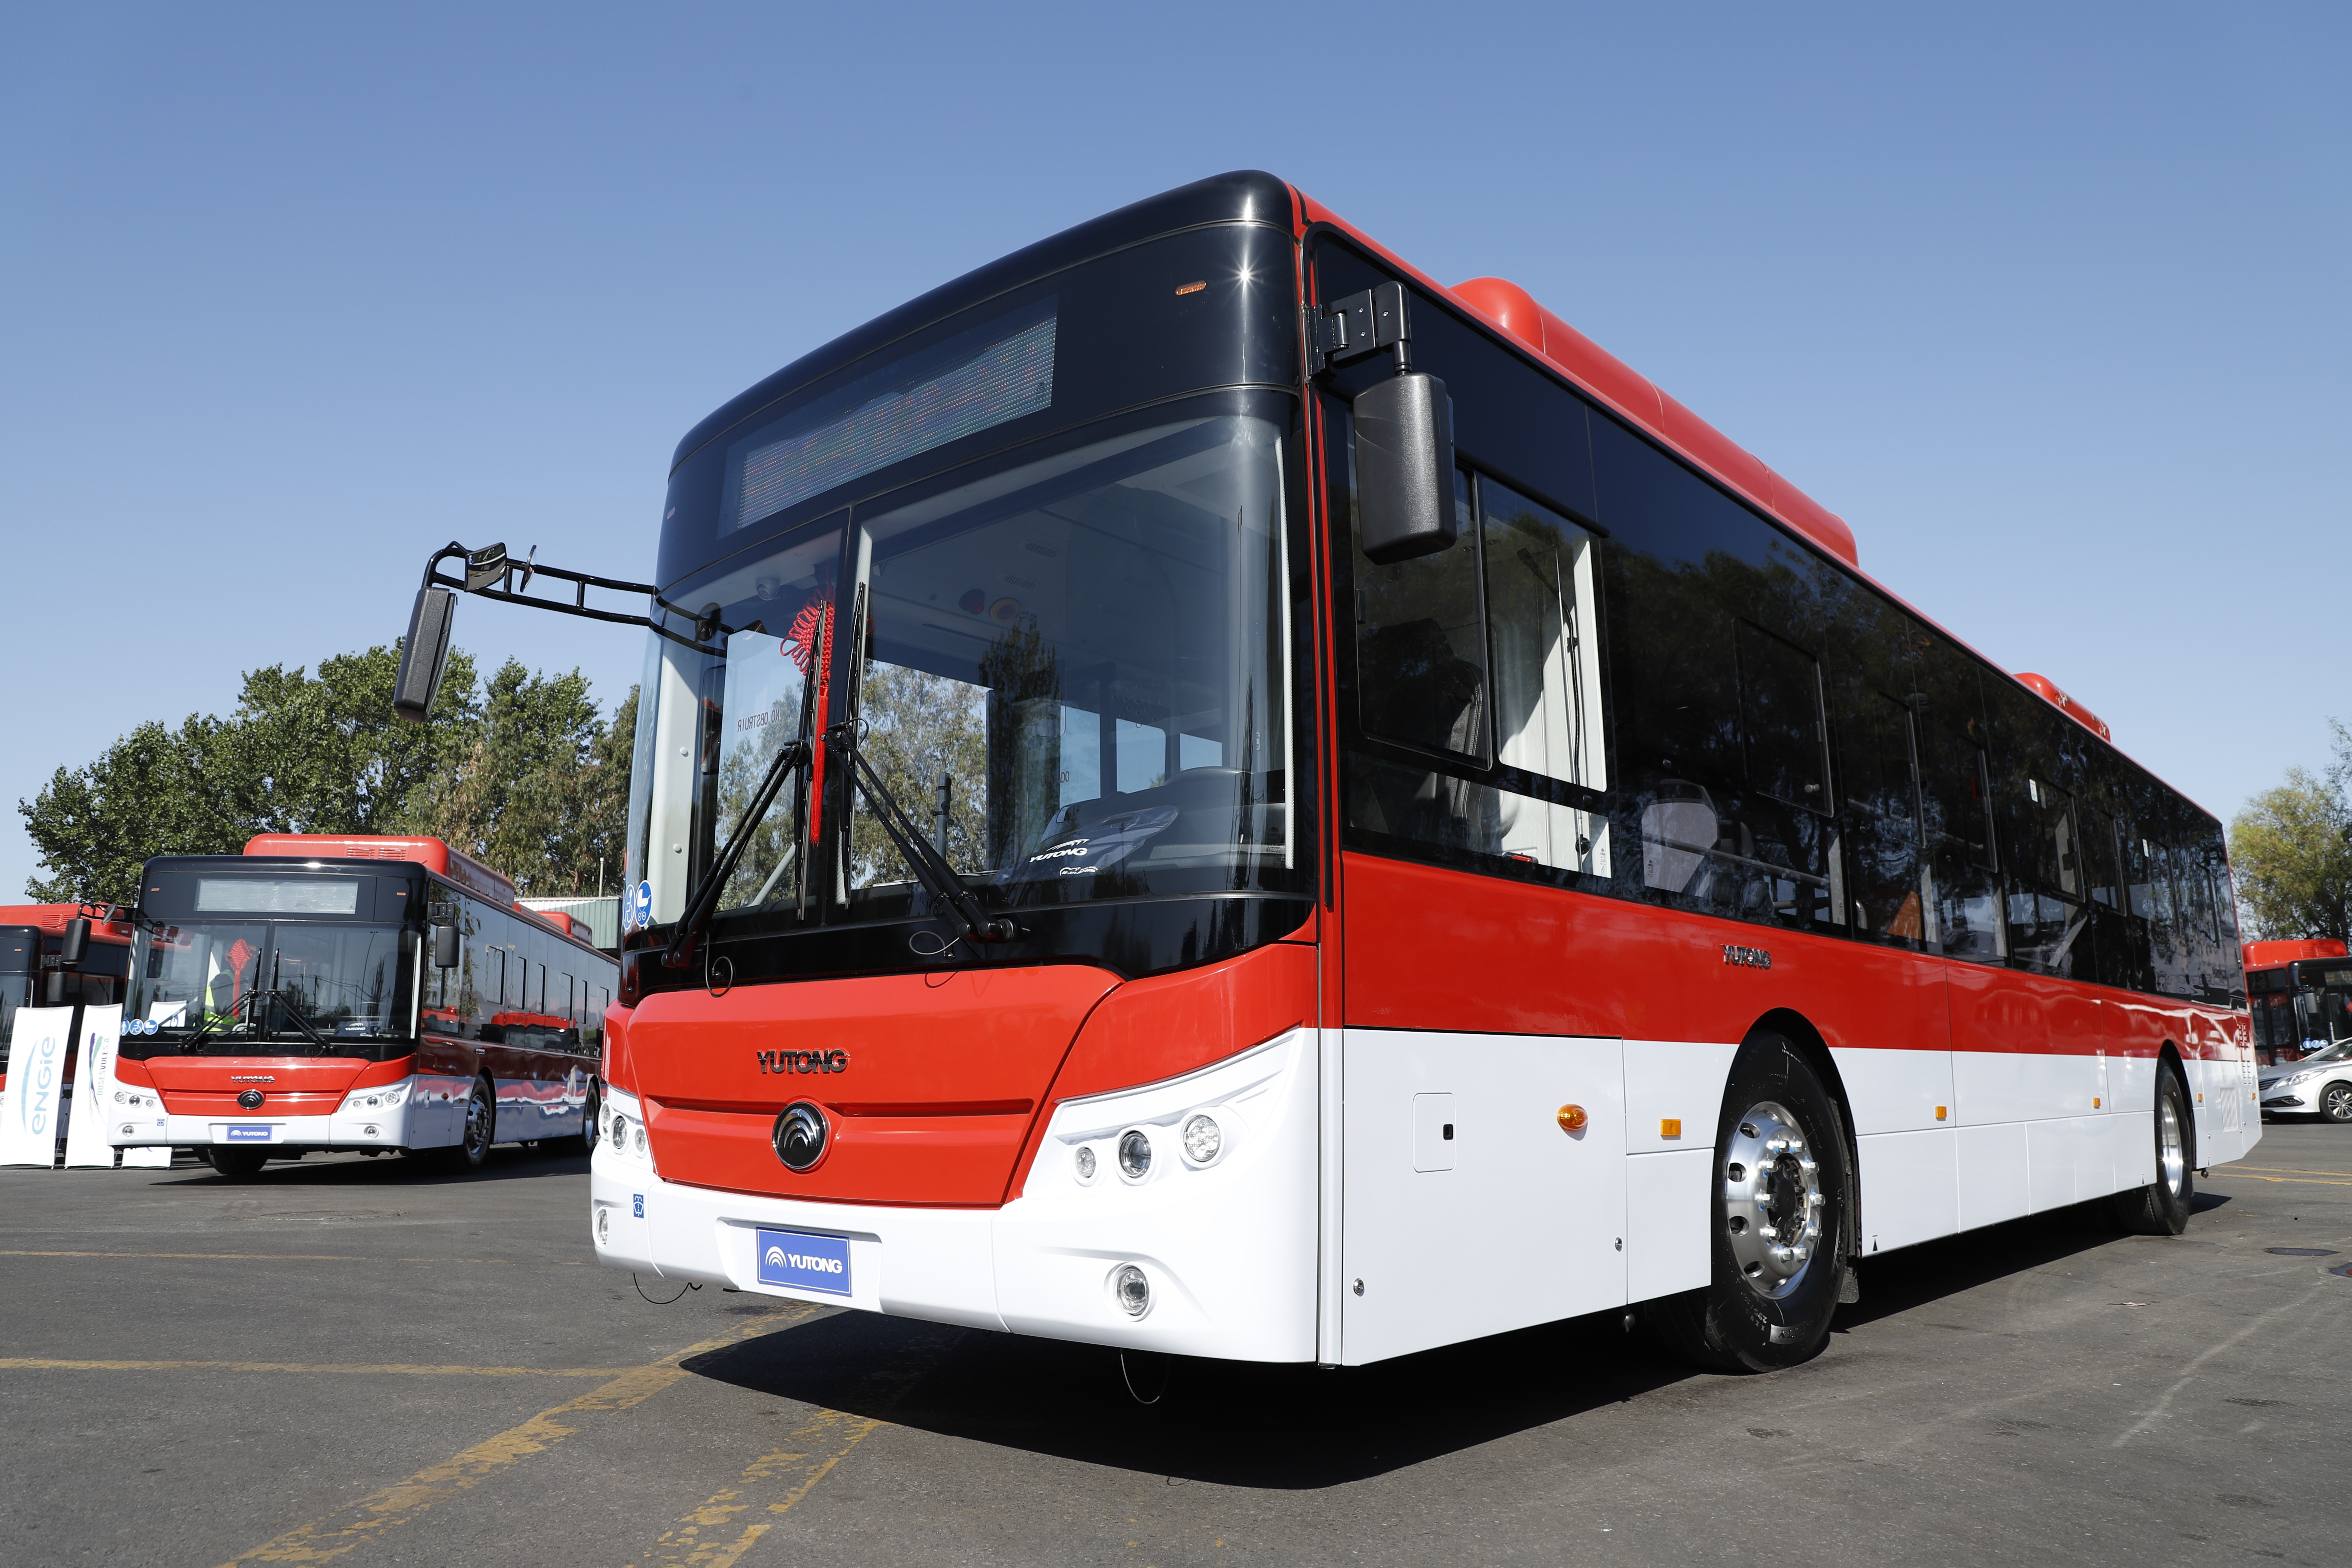 19 de enero 2019/SANTIAGO Imgenes de los nuevos buses, adquiridos para duplicar la electroflota del pas. Presentados por la Ministra y el subsecretario de Transportes FOTO: RUBEN ZAMORA/AGENCIA UNO